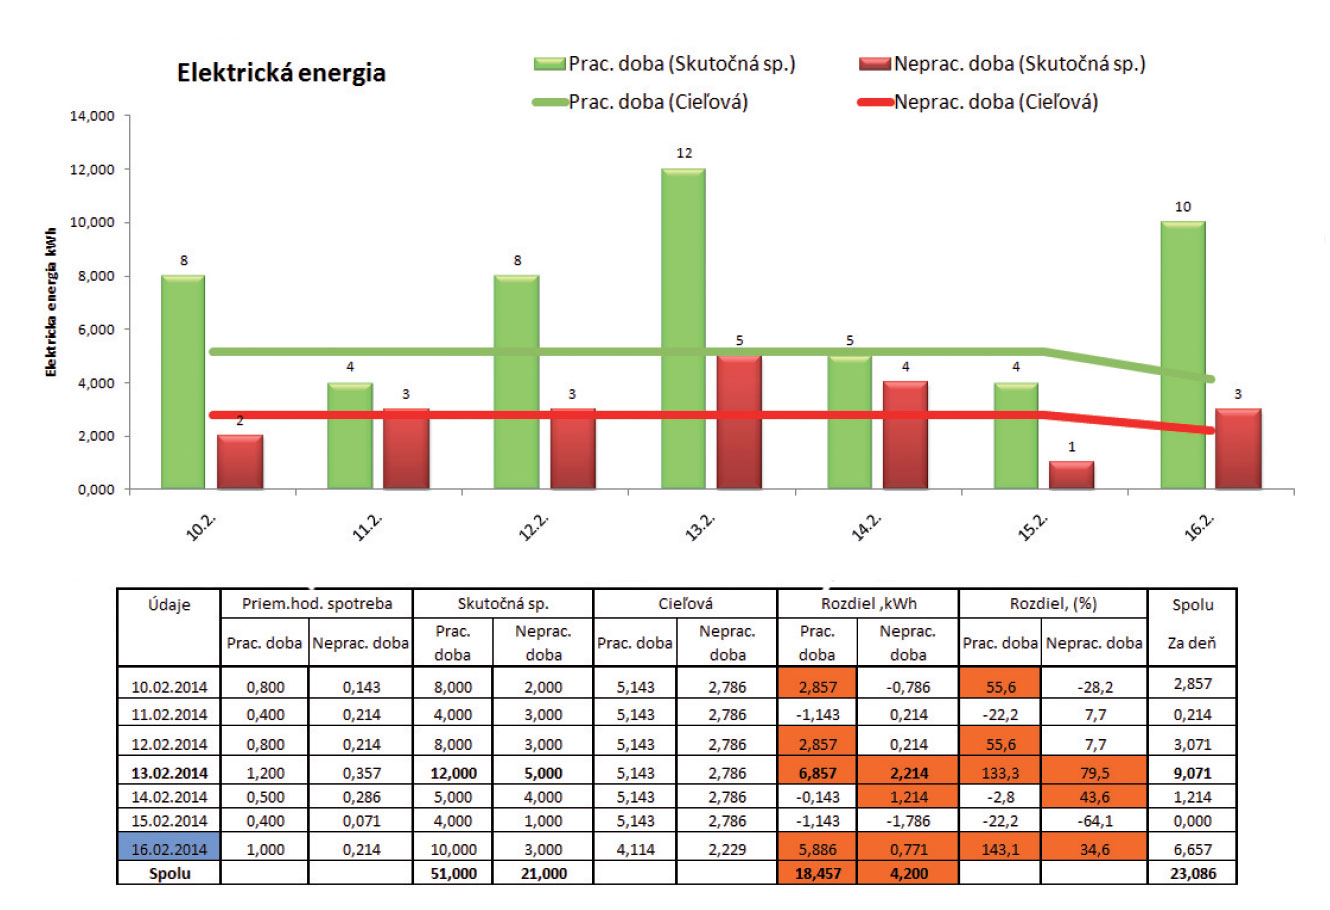 Obr. 2 Výsledky z monitoringu elektrickej energie od 10. 2. 2014 do 16. 2. 2014